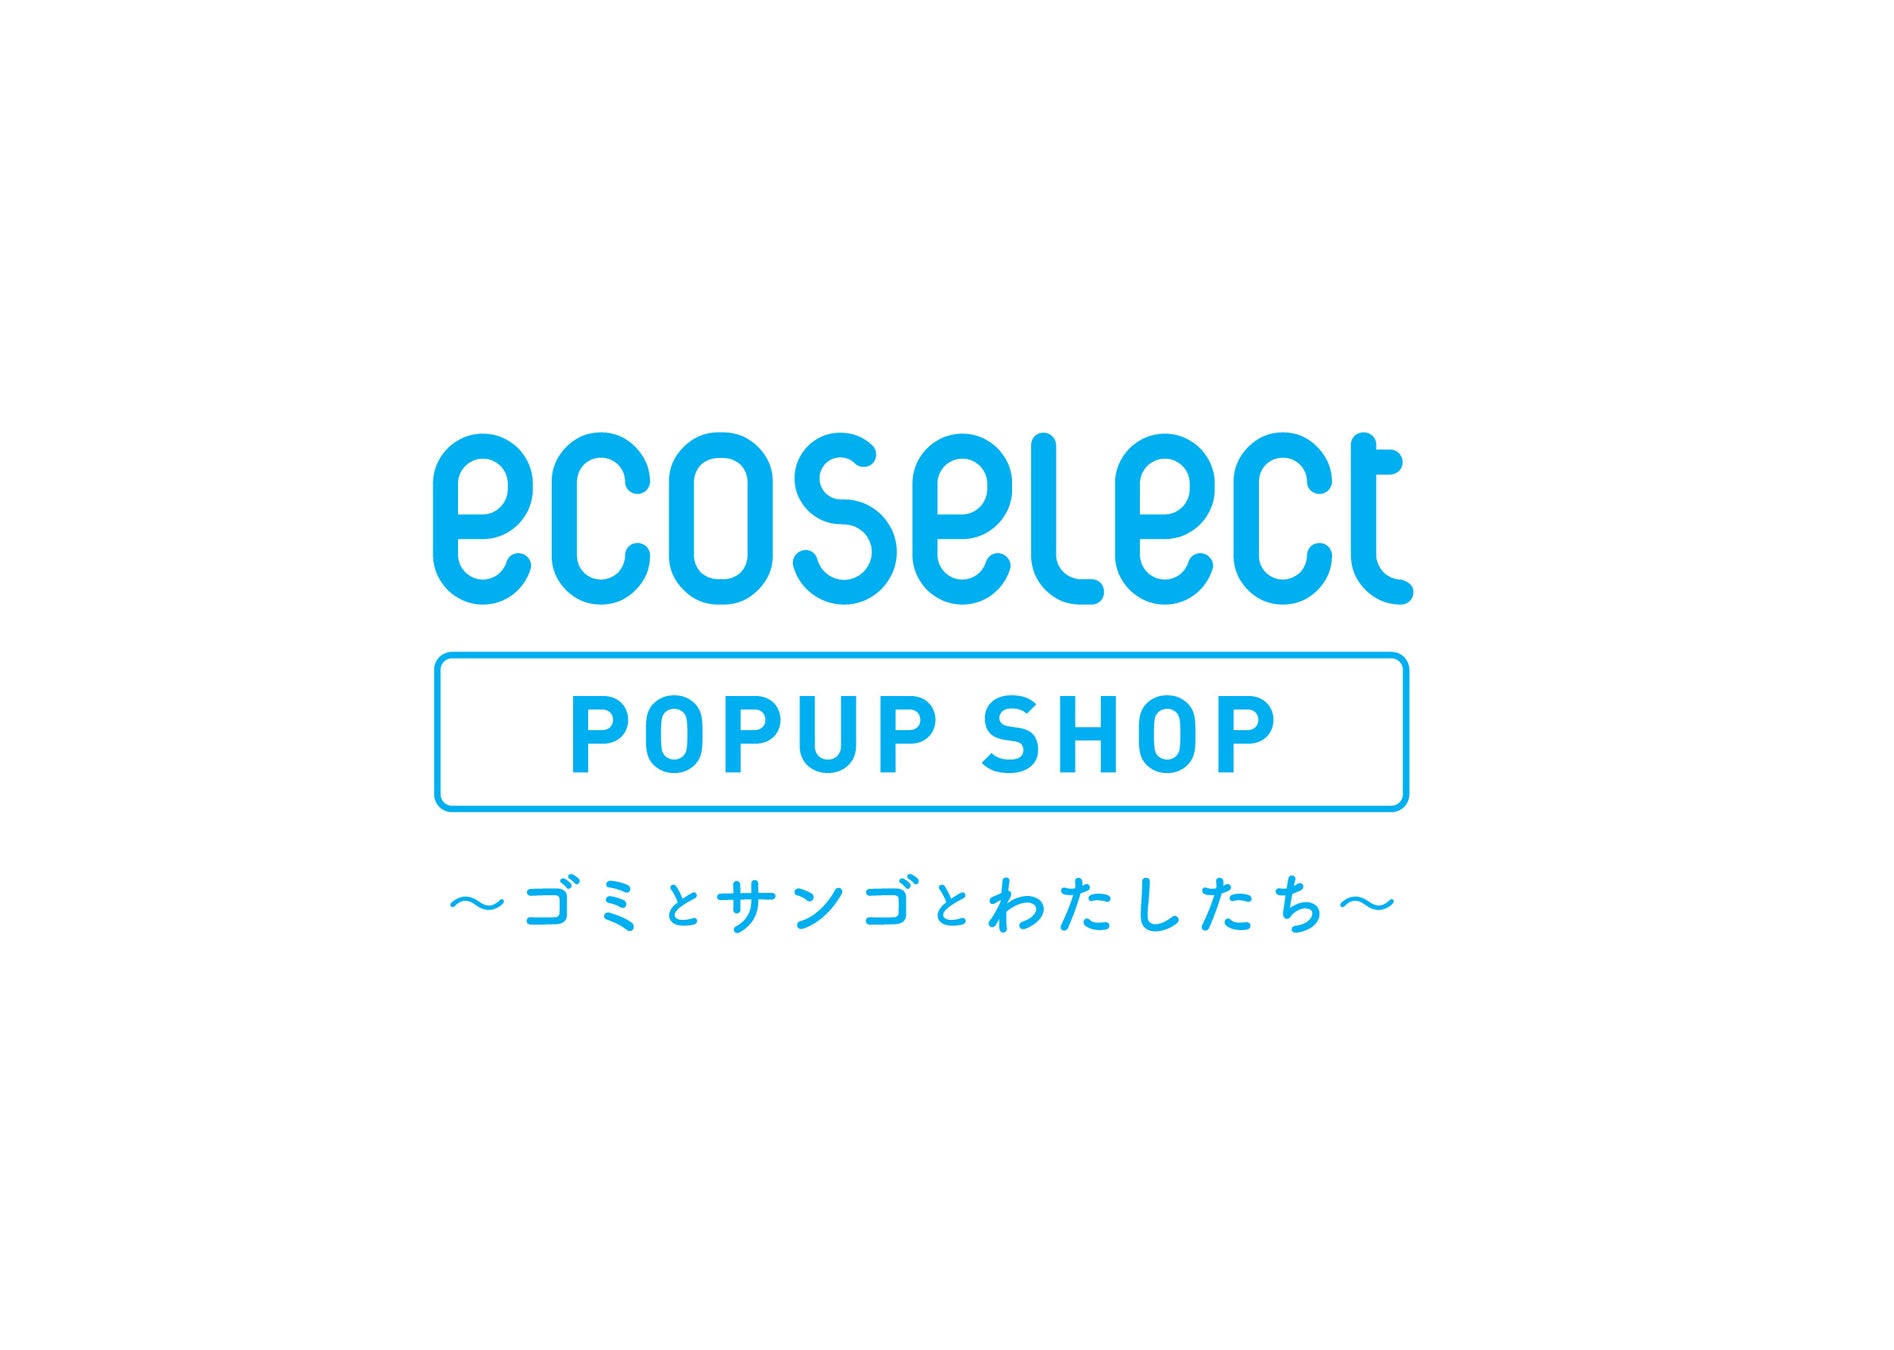 クラダシ、東京ソラマチ®で開催される「ecoselect POPUP SHOP」に出店のサブ画像3